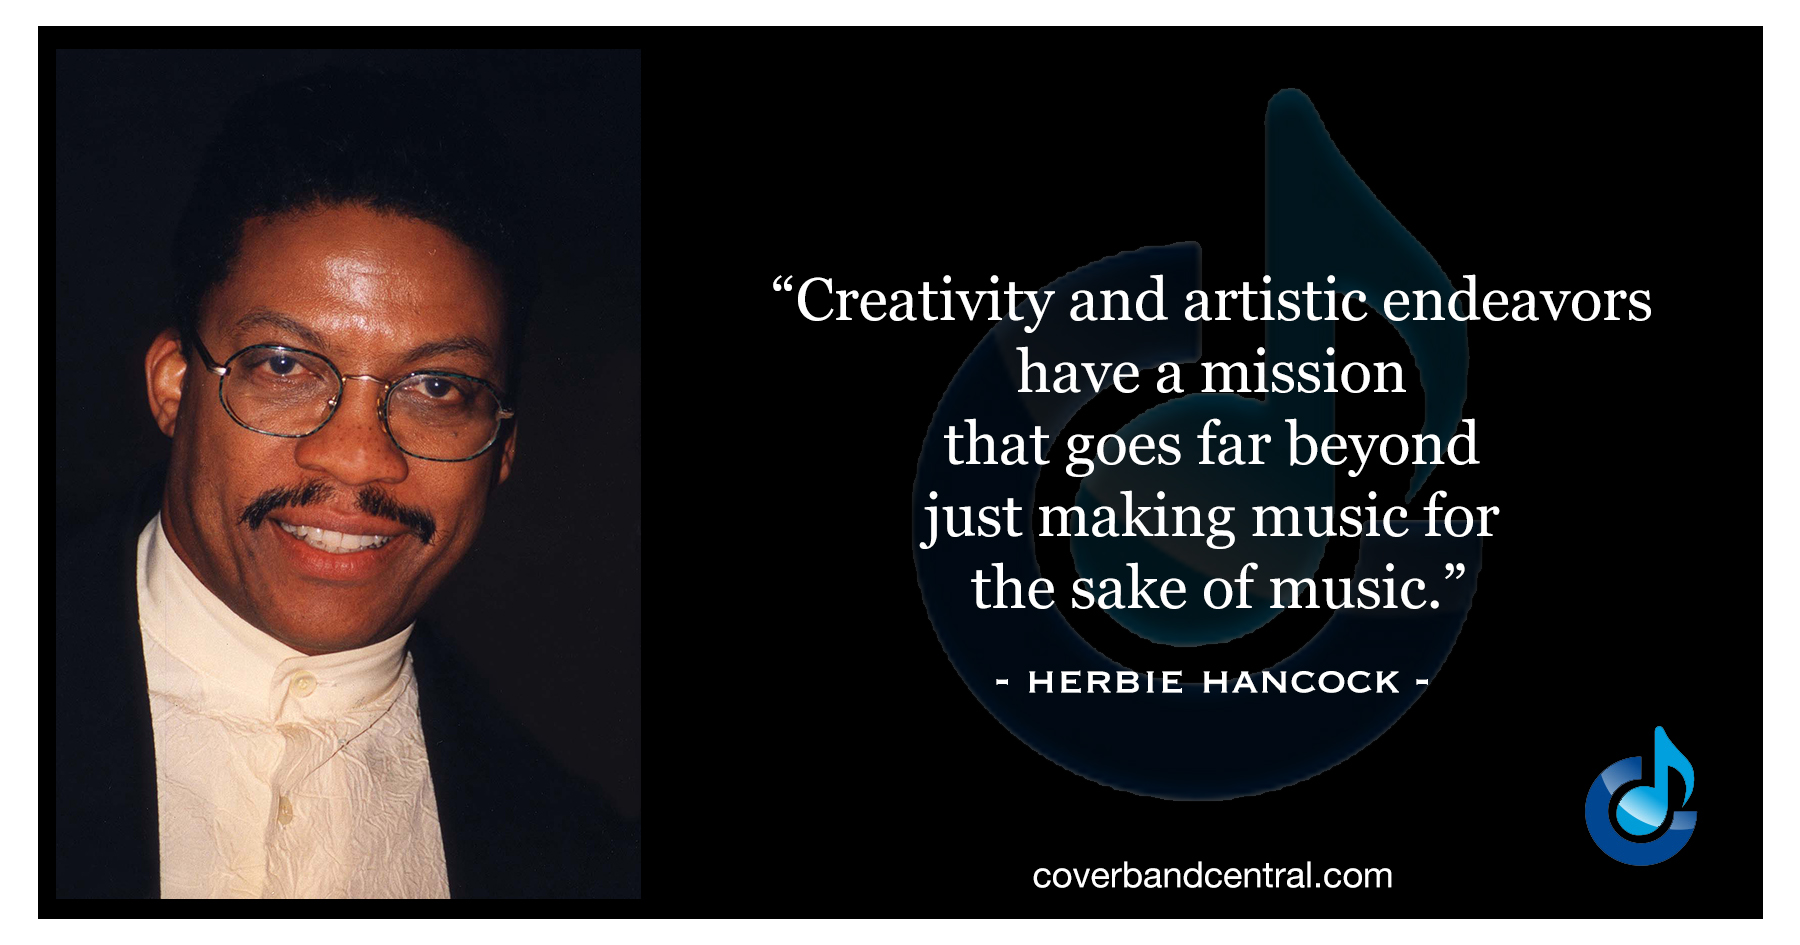 Herbie Hancock quote